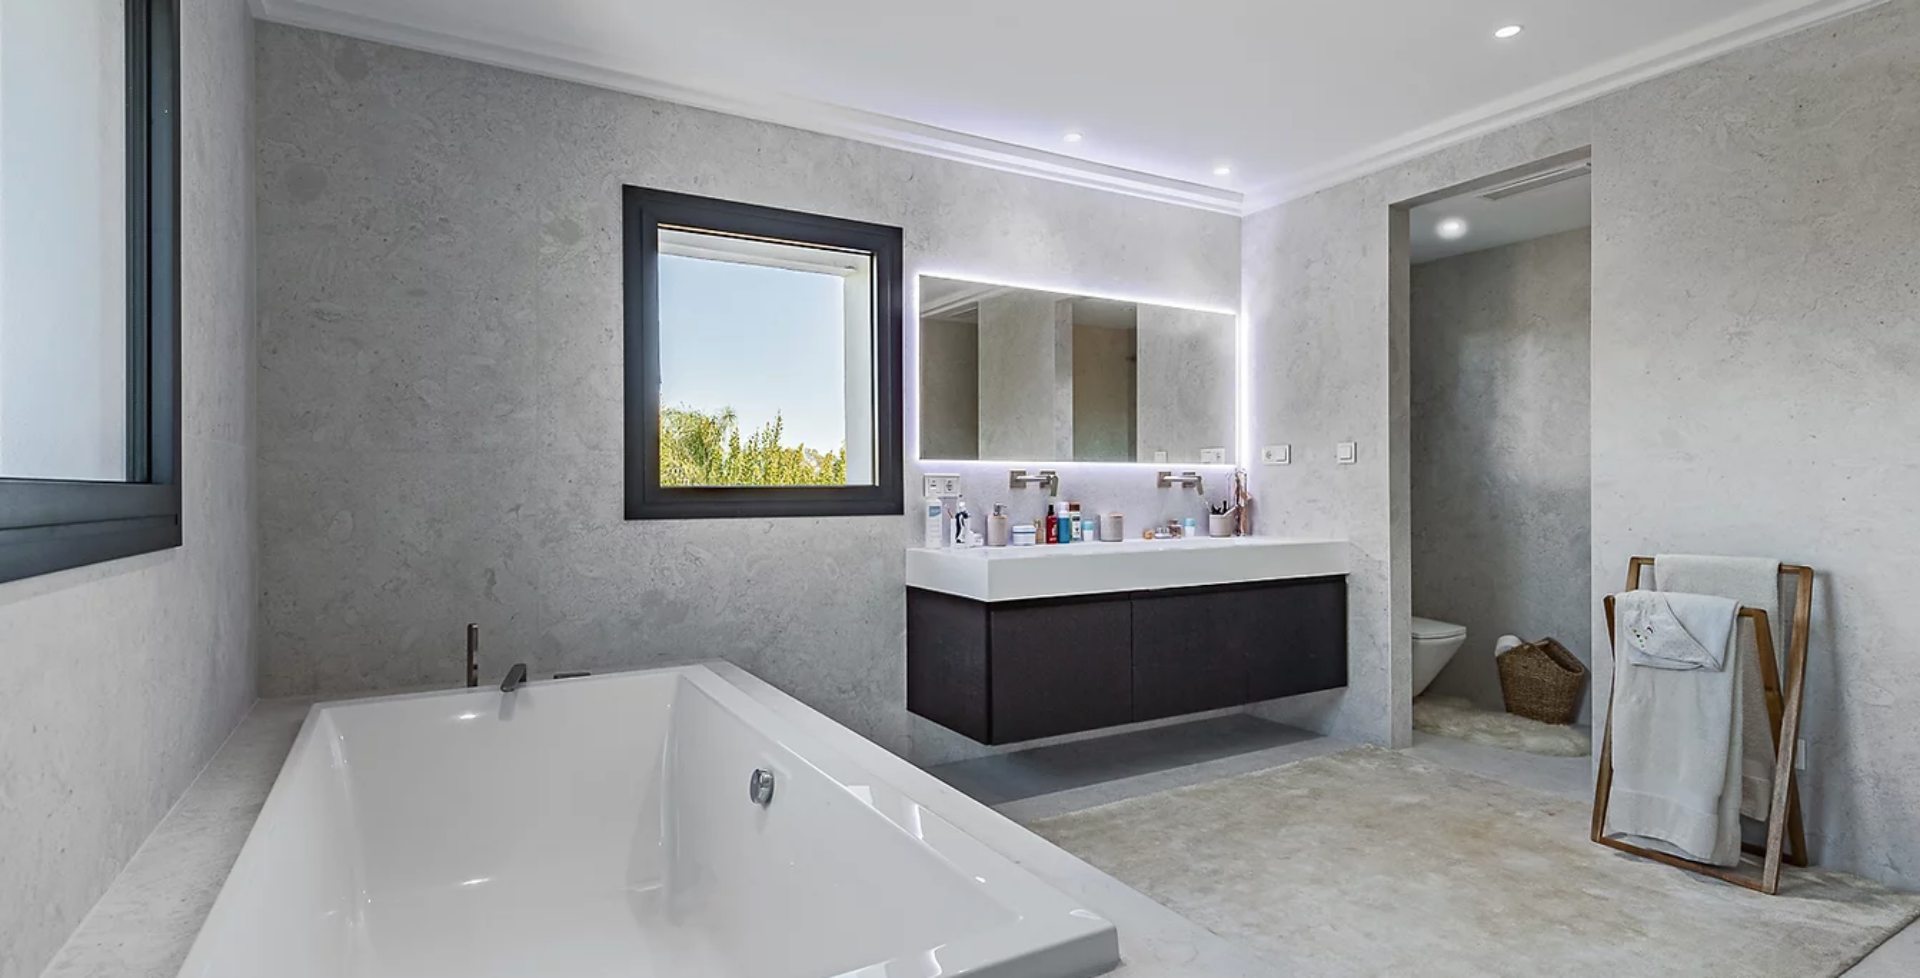 Villa-Soul-6-bedroom-luxury-villa-Marbella-bath-tub